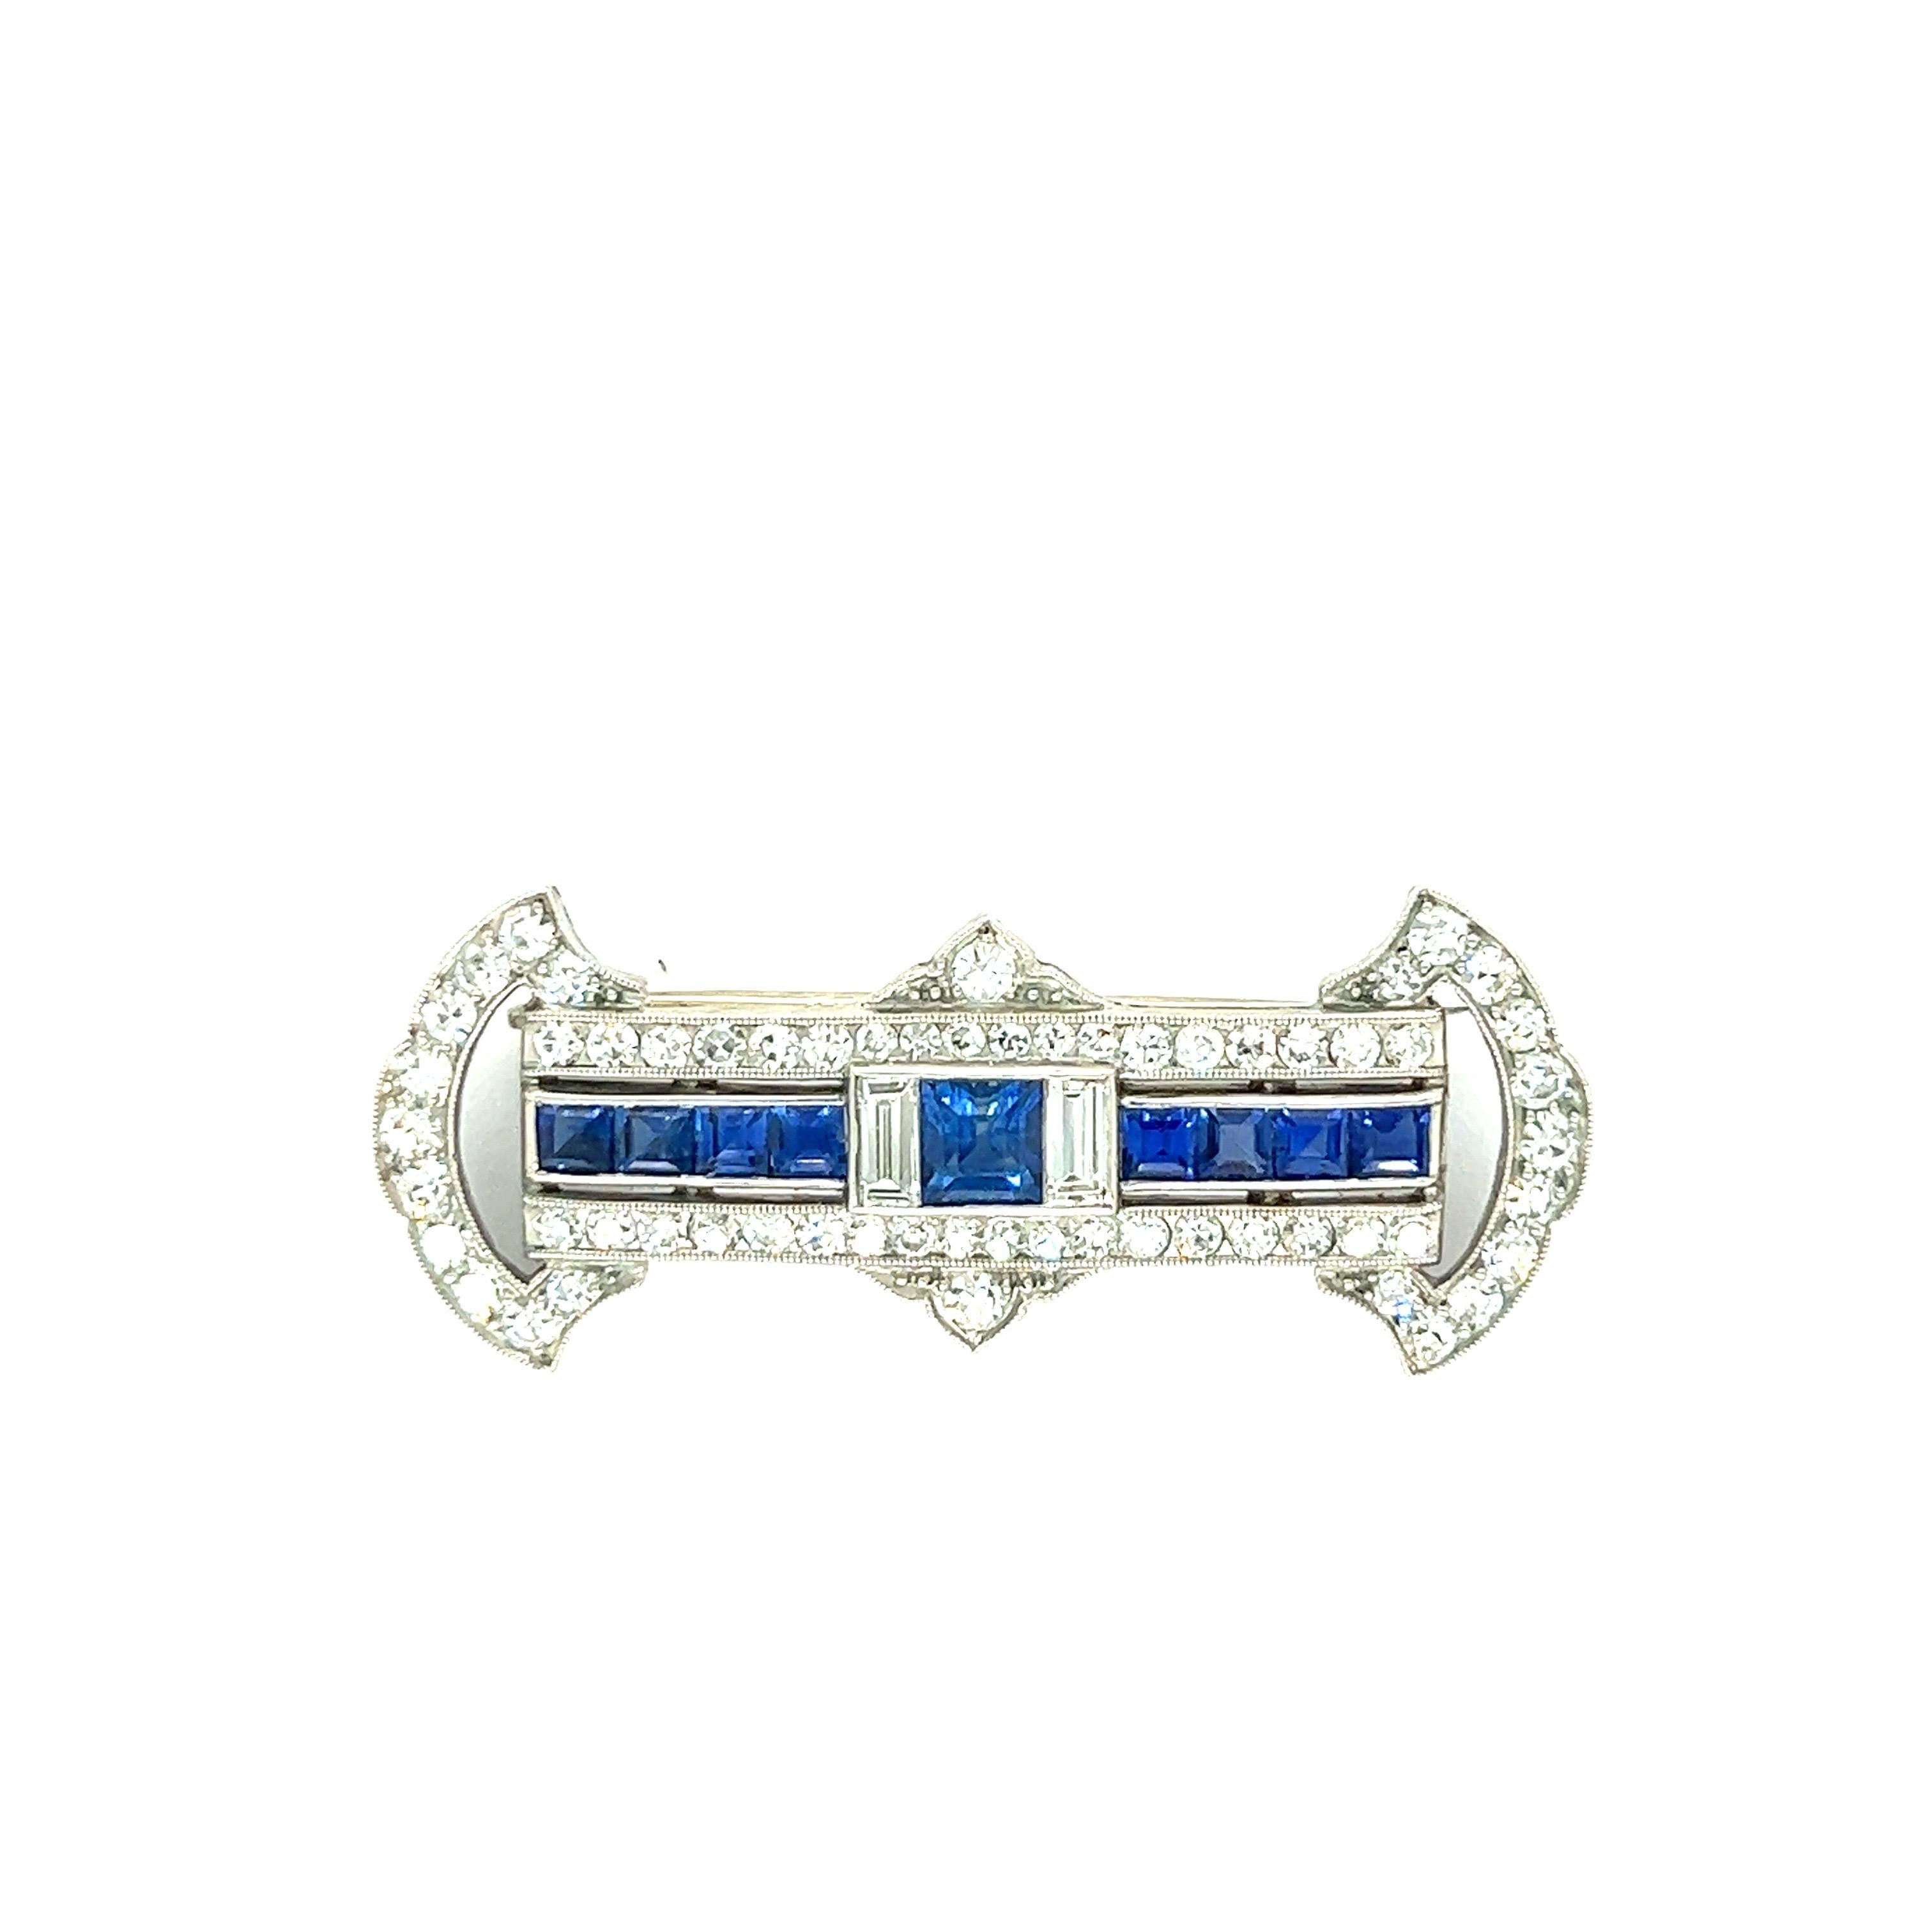 Art Deco Saphir Diamant Platin Pin Brosche

Quadratische Saphire mit Diamanten im Baguetteschliff und einer Einfassung aus Diamanten im Einzelschliff von insgesamt ca. 1 Karat; gefasst in Platin 

Größe: Breite 3,5 cm, Länge 1,4 cm
Gesamtgewicht: